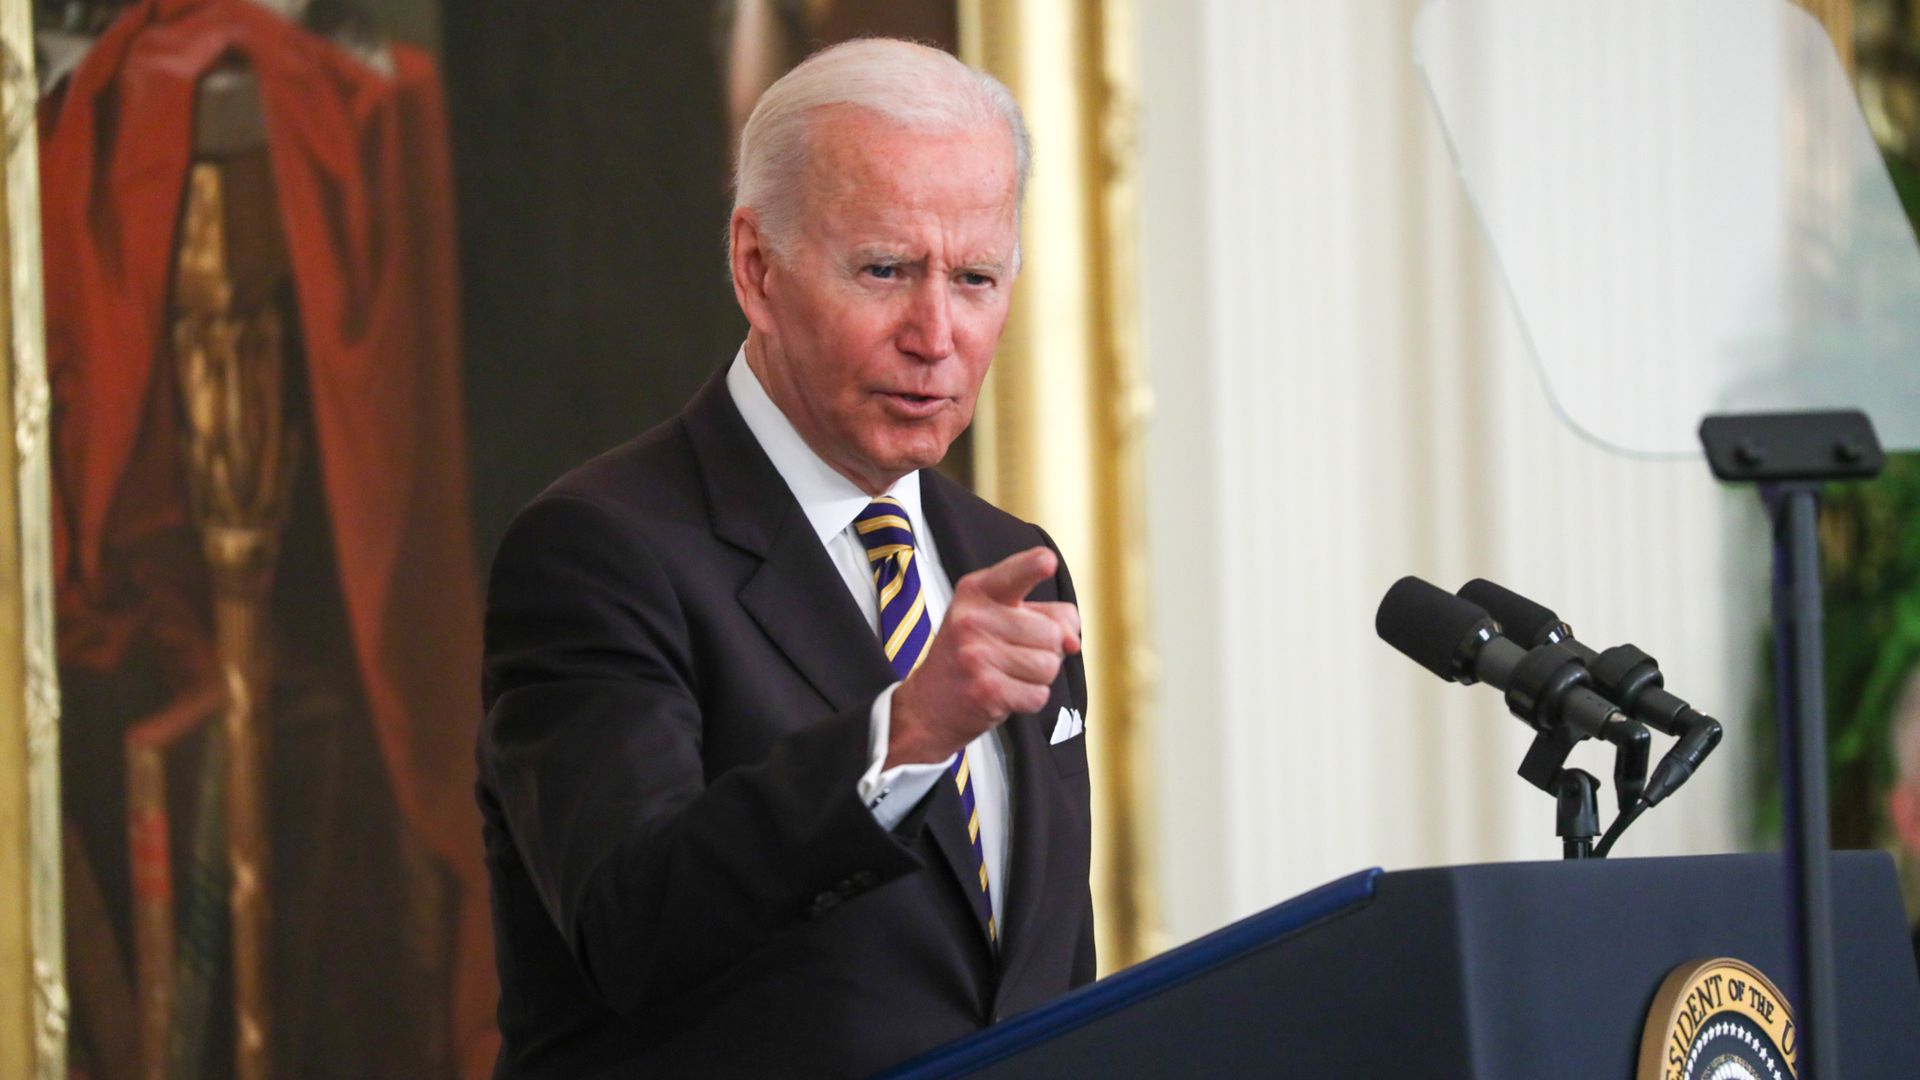 President Biden speaking in the White House on April 27.